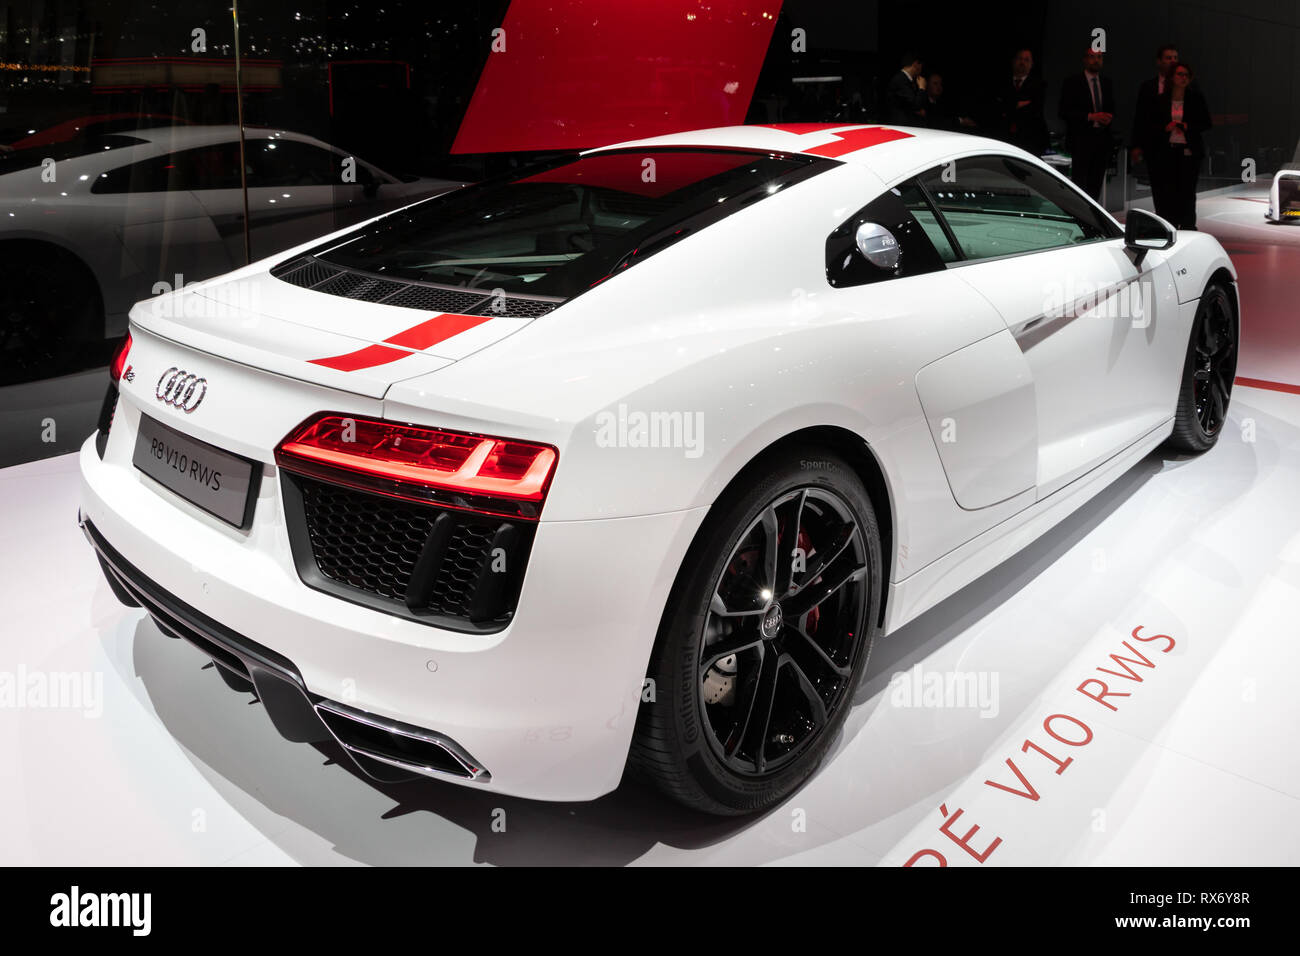 Genève, SUISSE - Le 6 mars 2018 : Audi R8 V10 voiture de sport RWS présentées lors de la 88e Salon International de l'Automobile de Genève. Banque D'Images